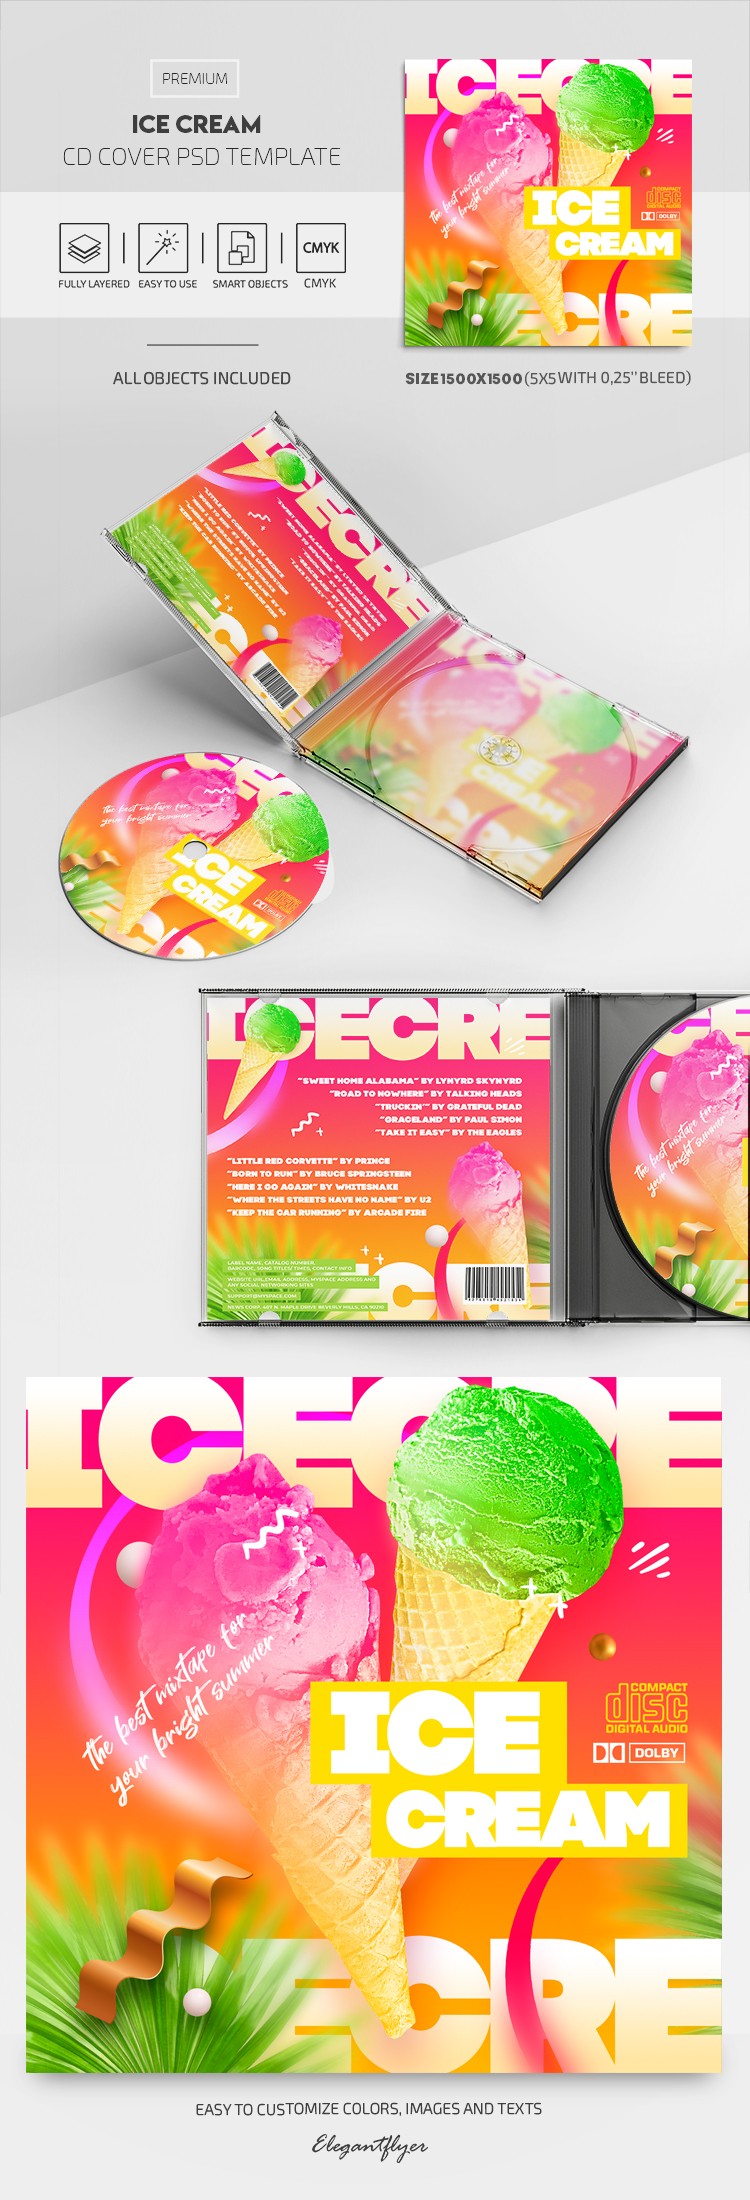 冰淇淋CD封面 by ElegantFlyer